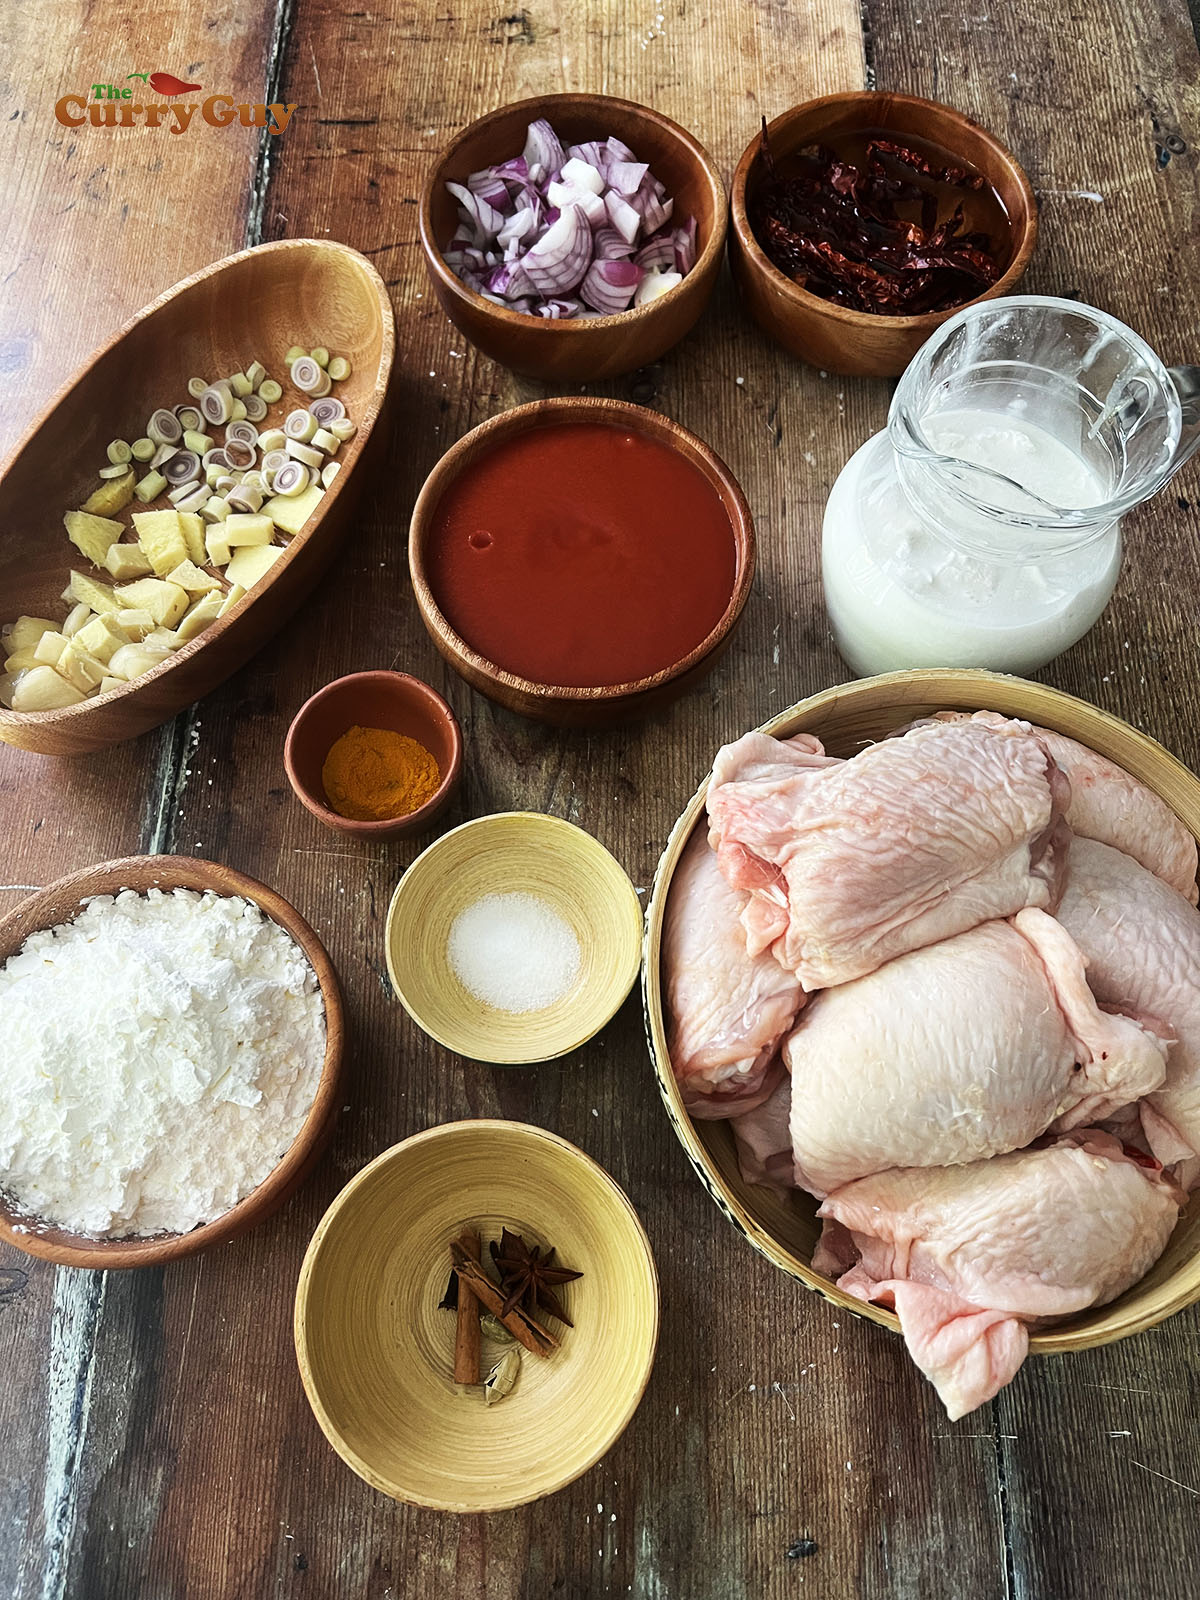 Ingredients for ayam masak merah